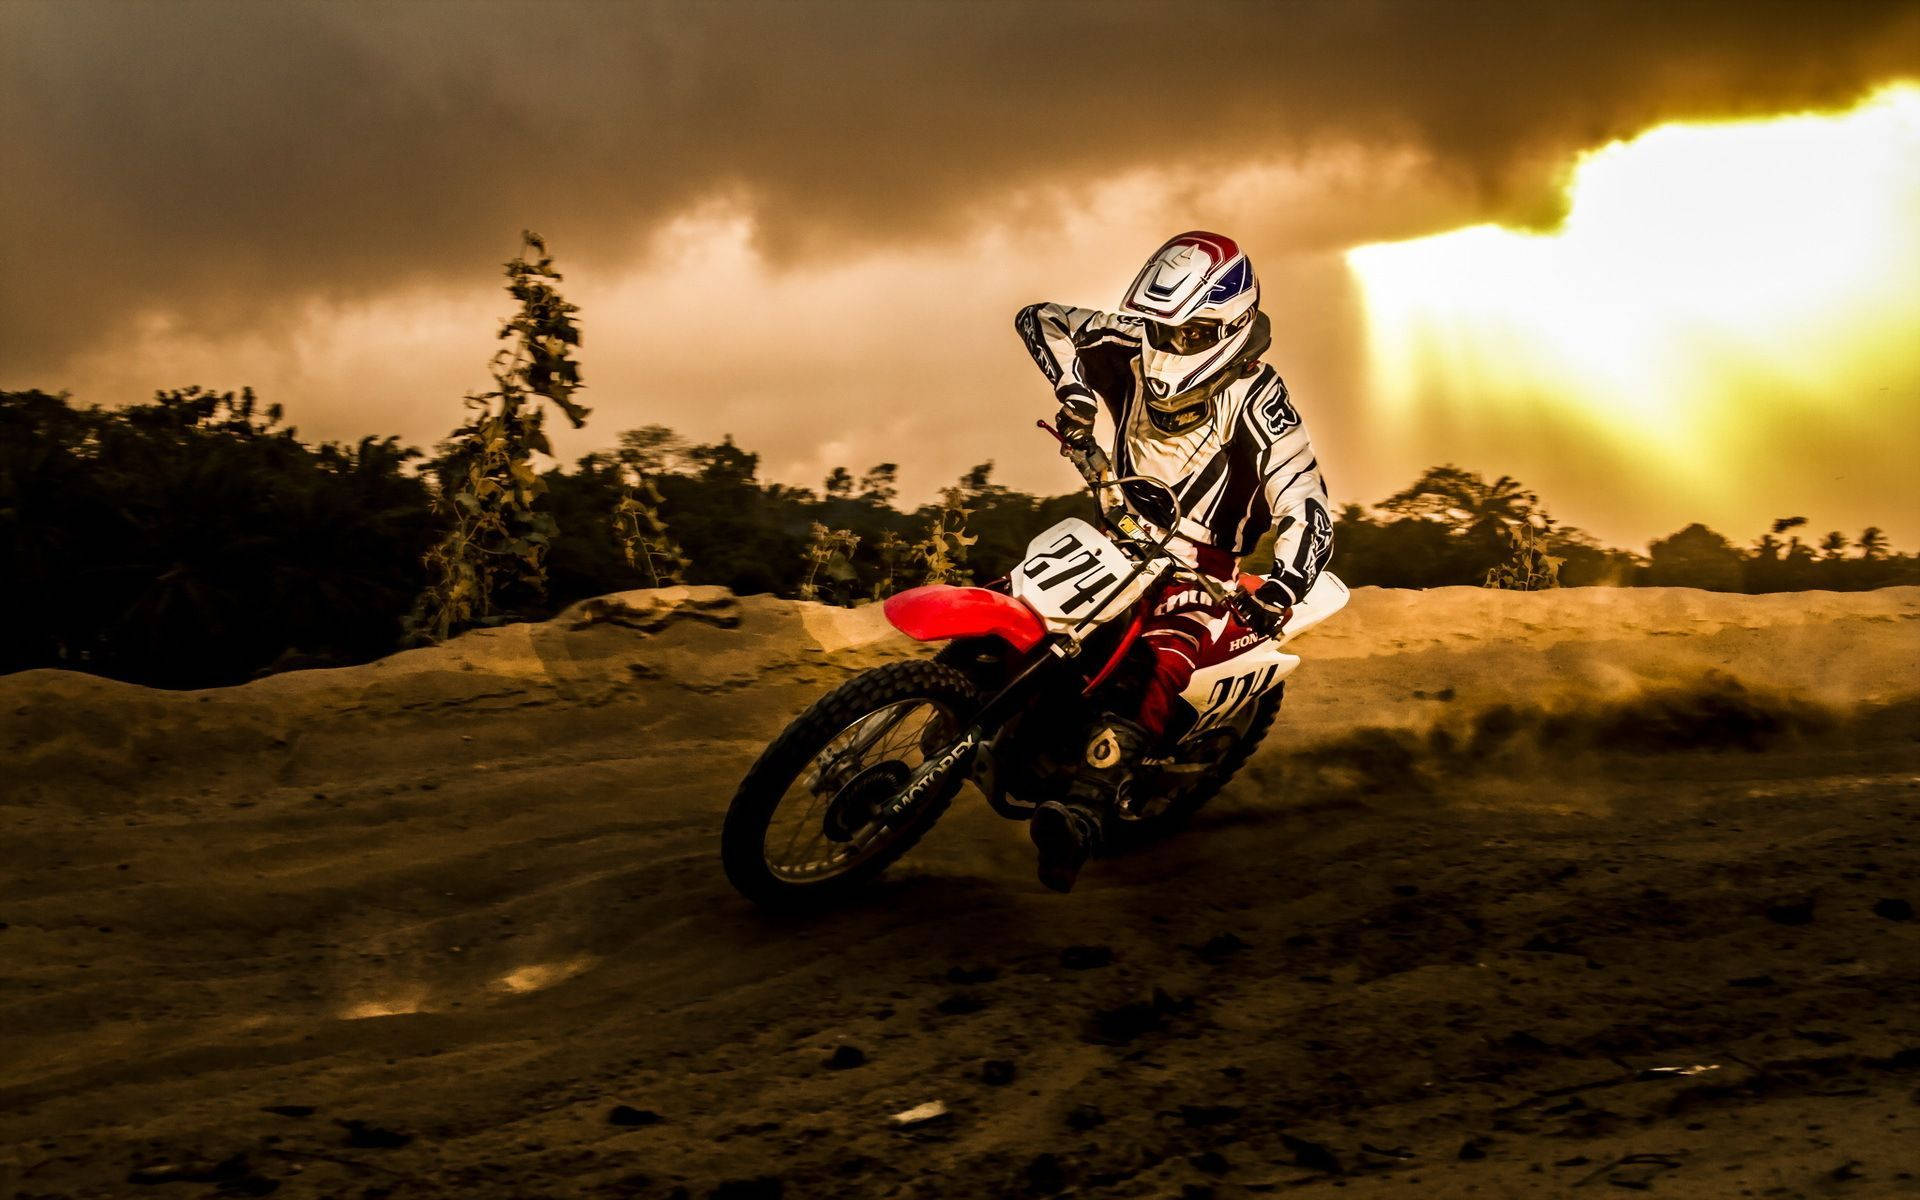 Unpilota Di Motocross Sta Guidando La Sua Moto Attraverso Un Campo Di Terra. Sfondo